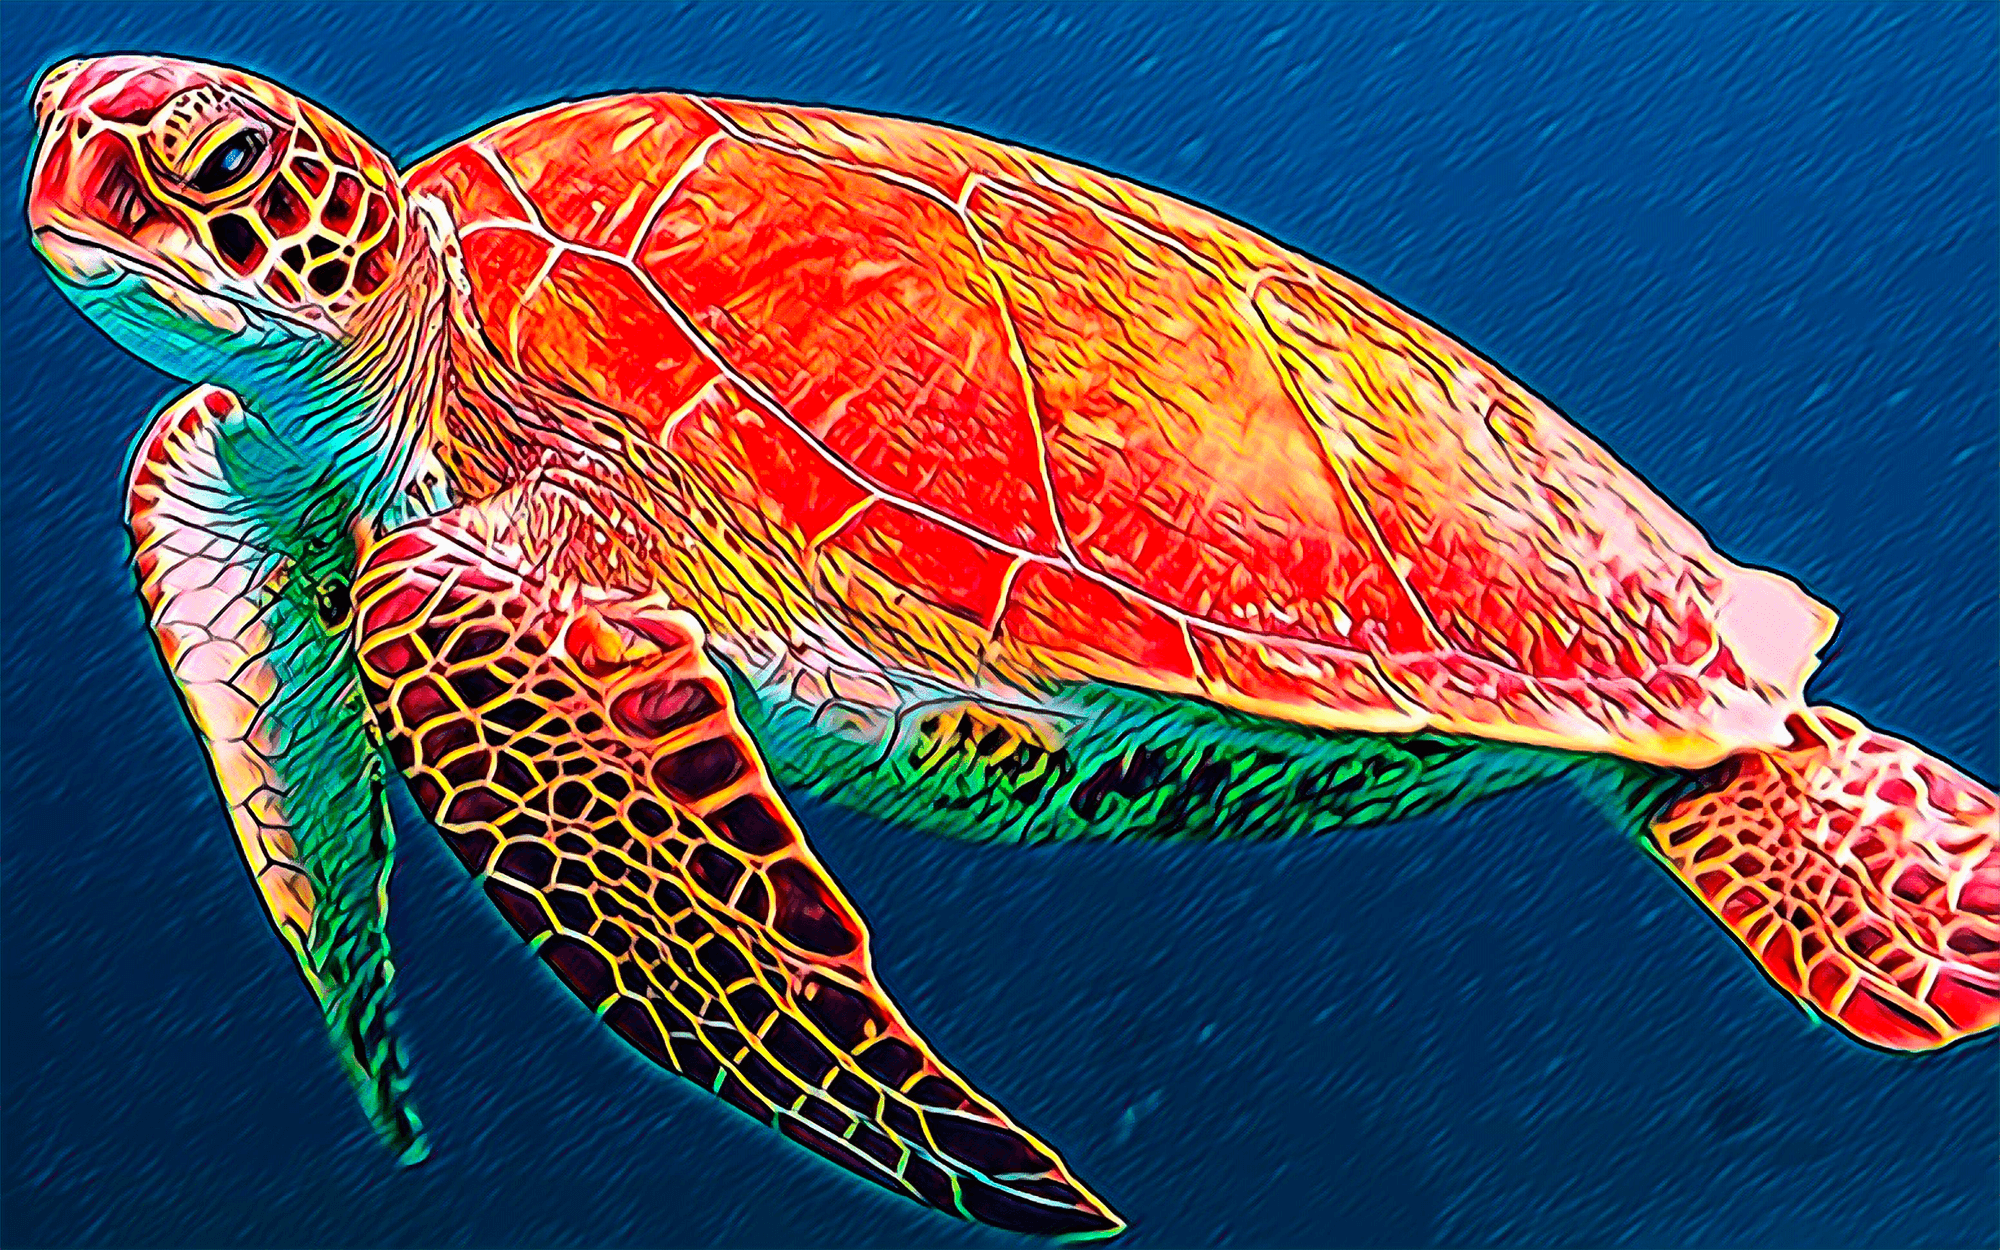 turtle by kay ryan analysis